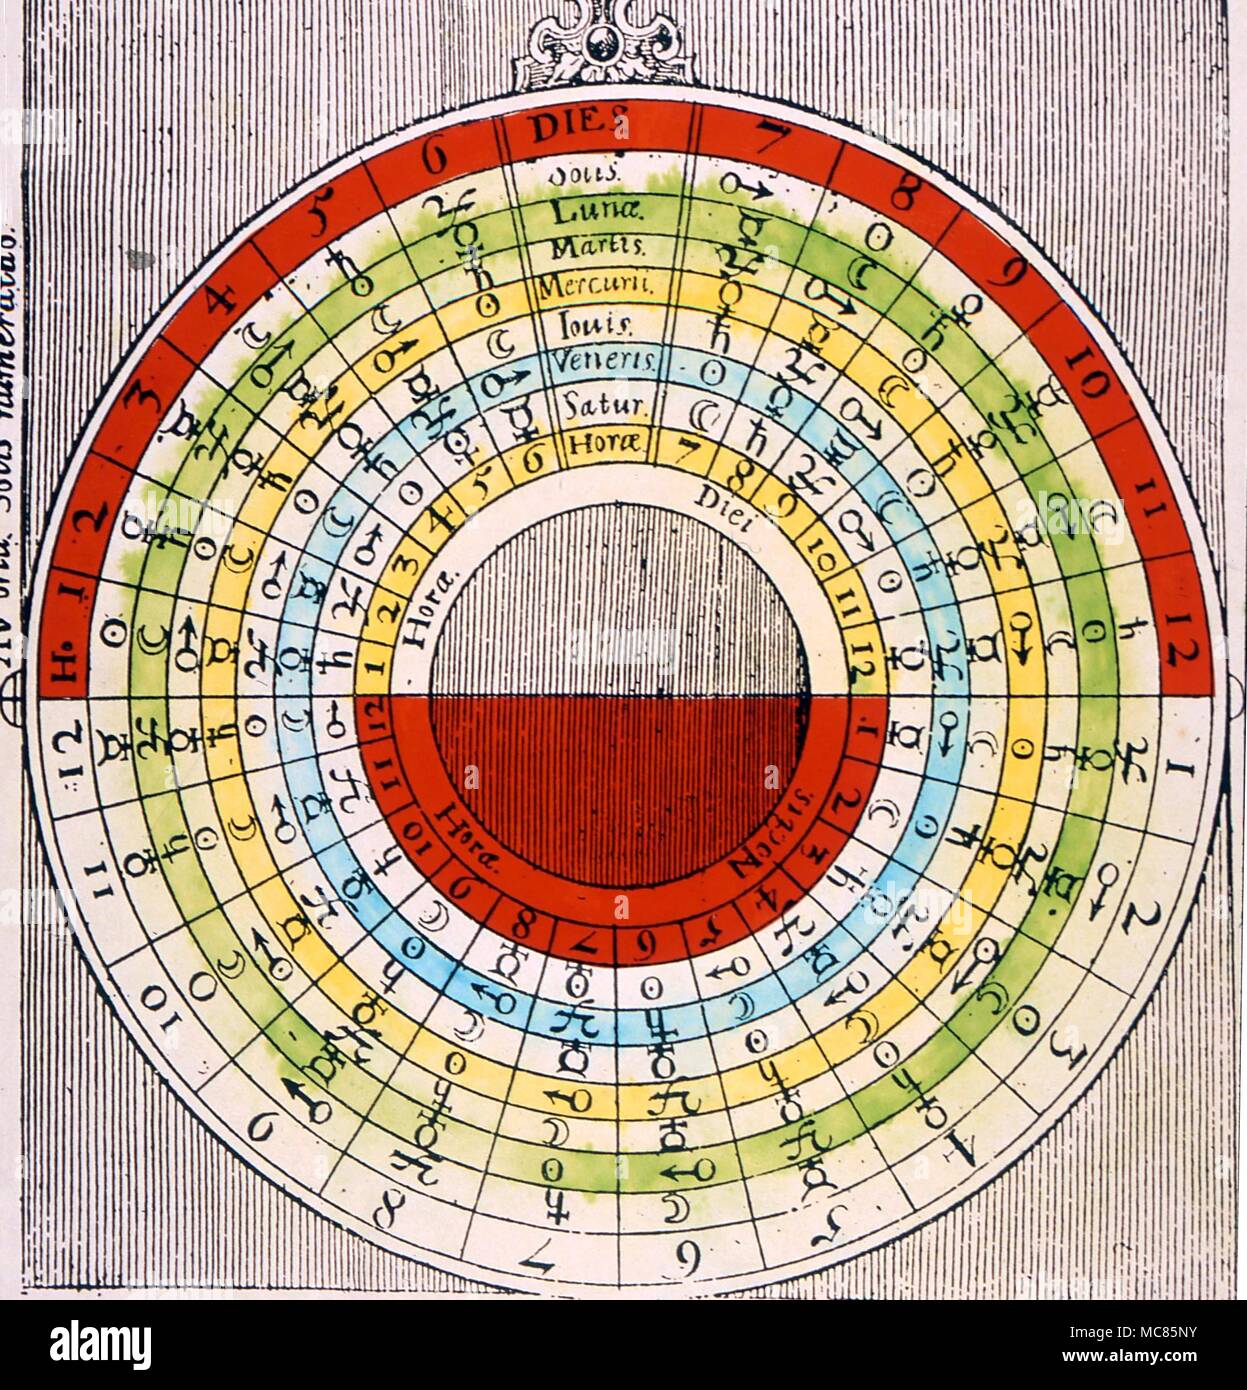 GRIMOIRE les heures planétaires dans la littérature grimoire les heures planétaires sont parfois appelés des ascendants. Ce schéma, à partir de Fludd's 'Utriusque Cosmi Historia" de 1617, est utilisé pour déterminer la planète au cours d'une journée ou de la nuit Banque D'Images